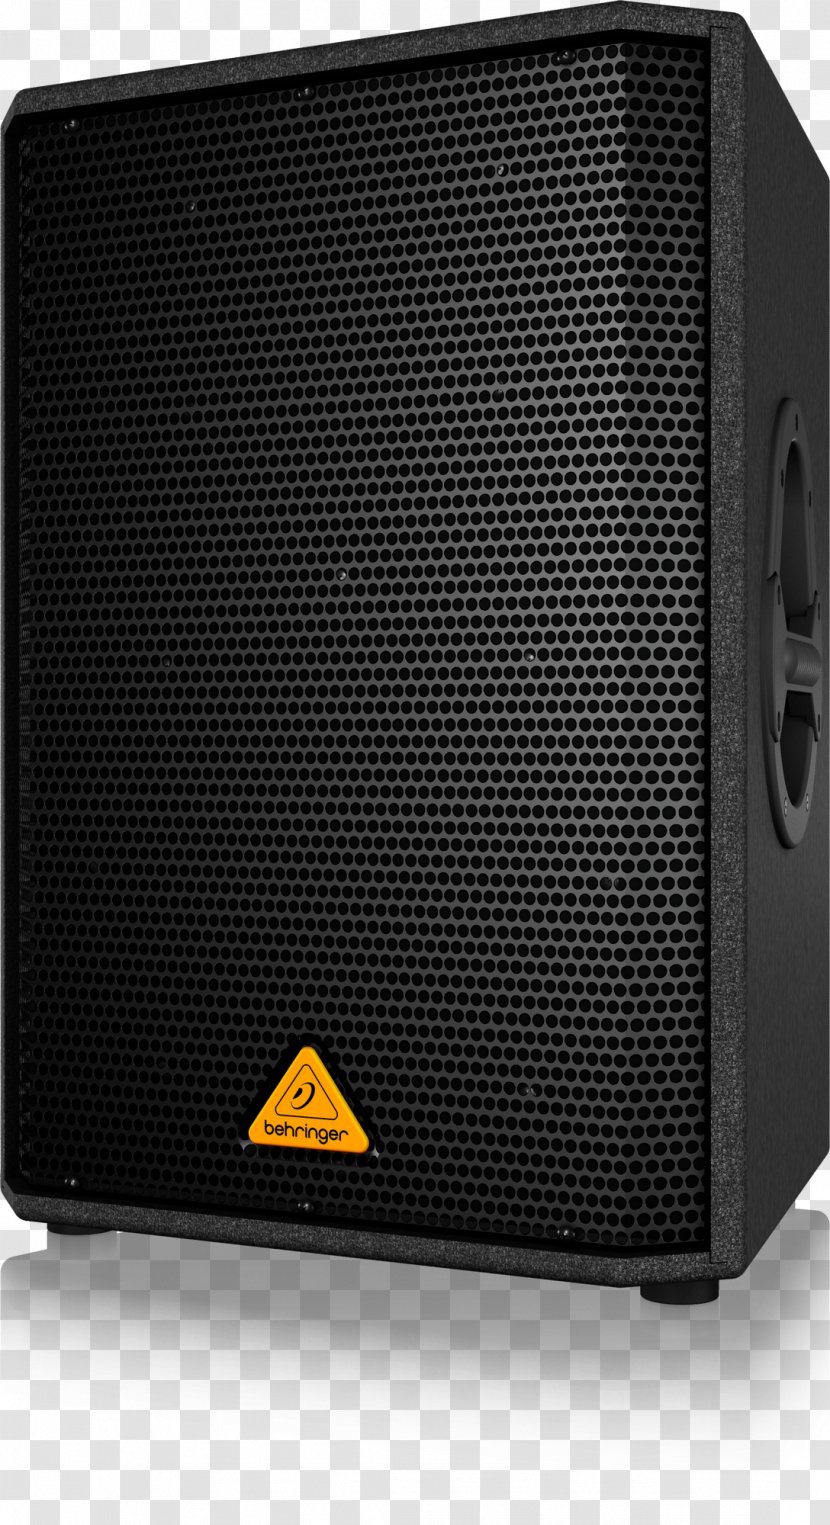 BEHRINGER Eurolive VP1520 Loudspeaker Public Address Systems Compression Driver - Behringer Vs20 - Acoustics Transparent PNG